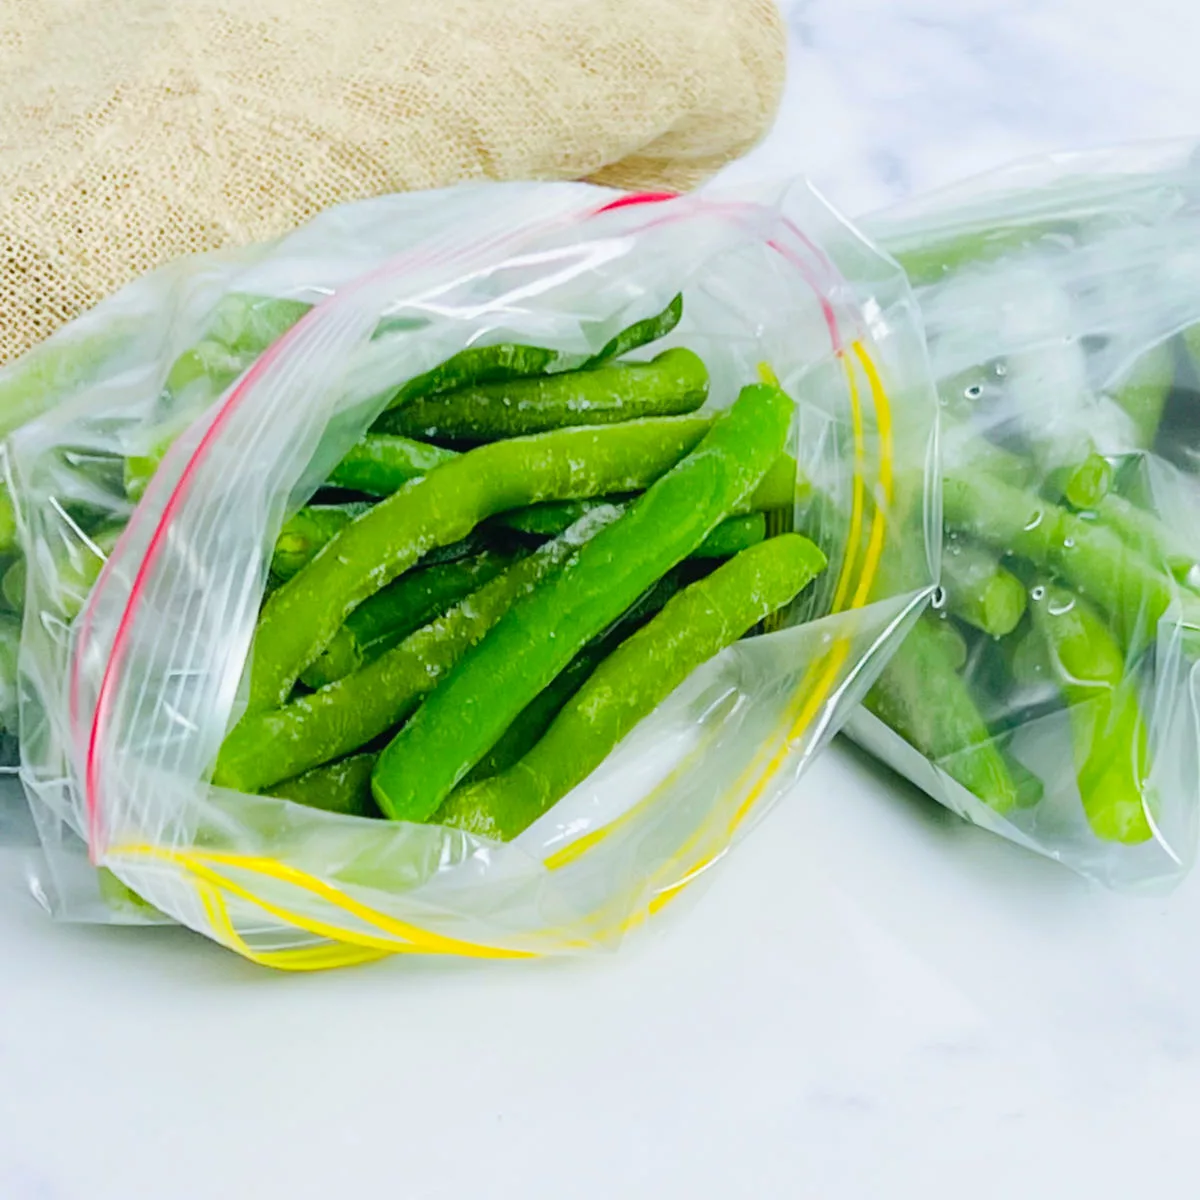 Frosen green beans.